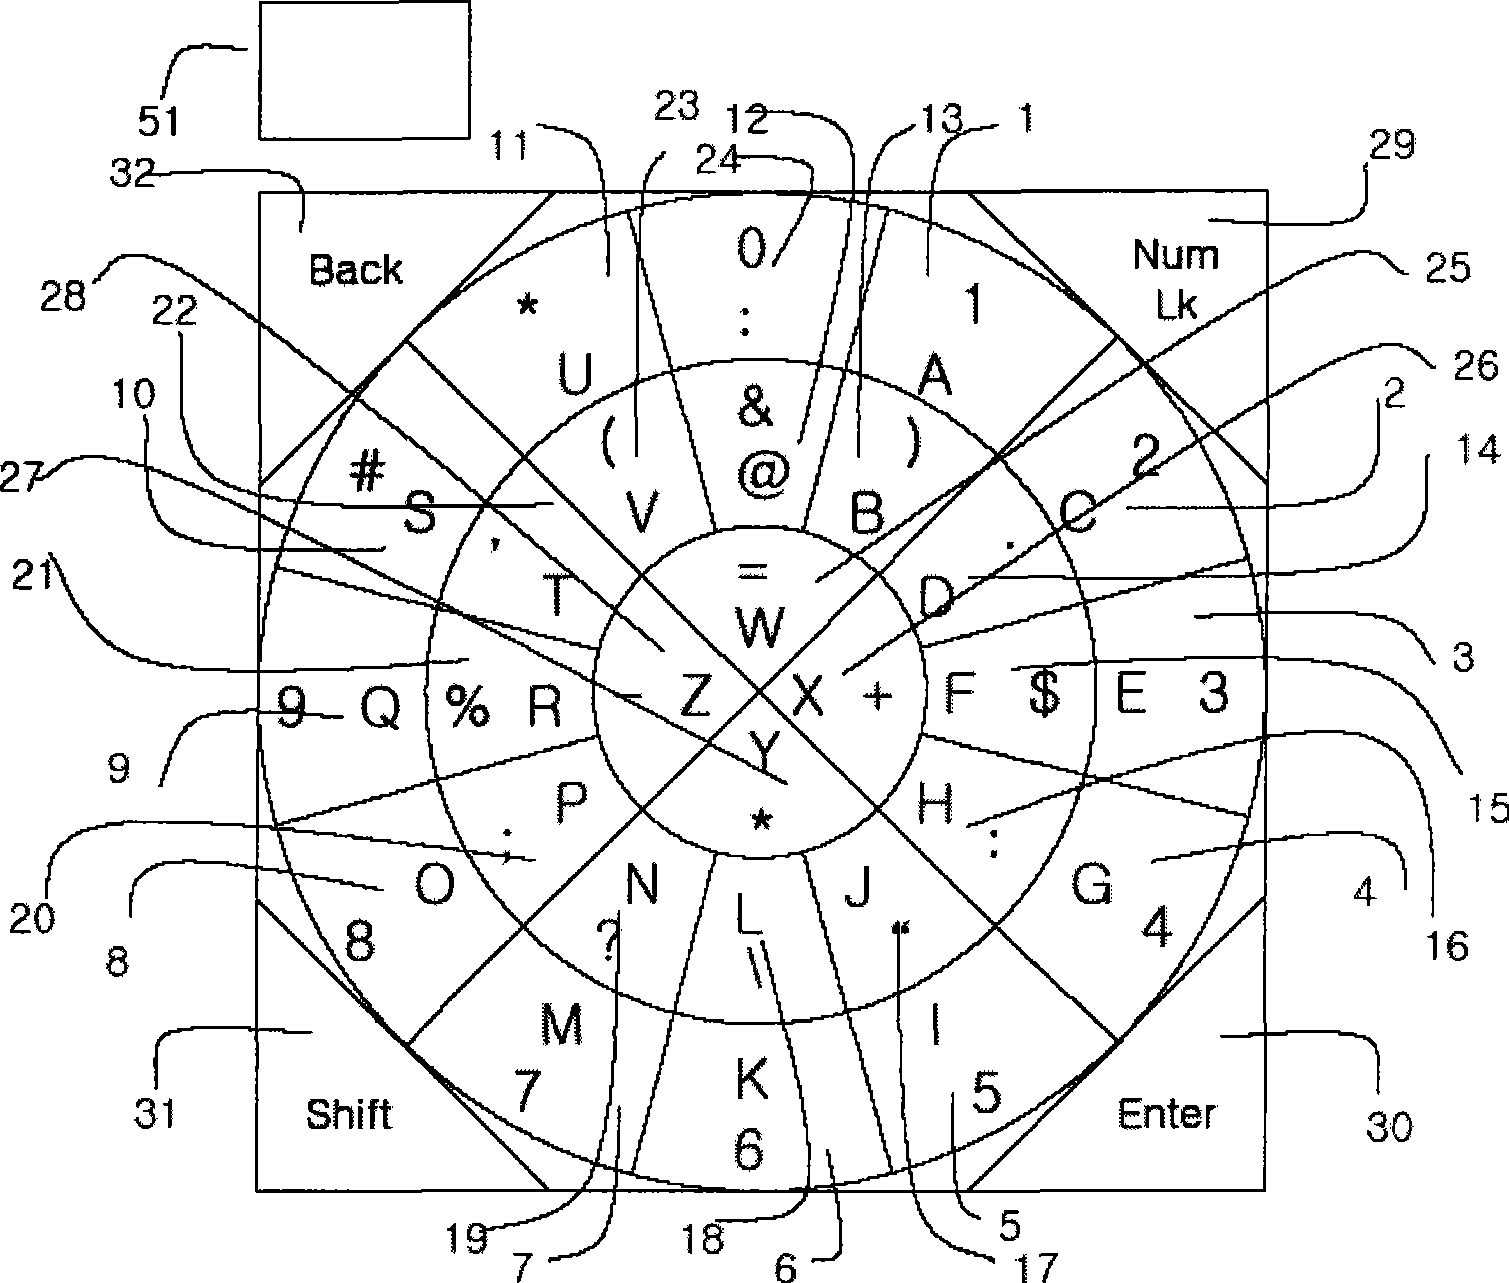 Chinese input system using circular keyboard